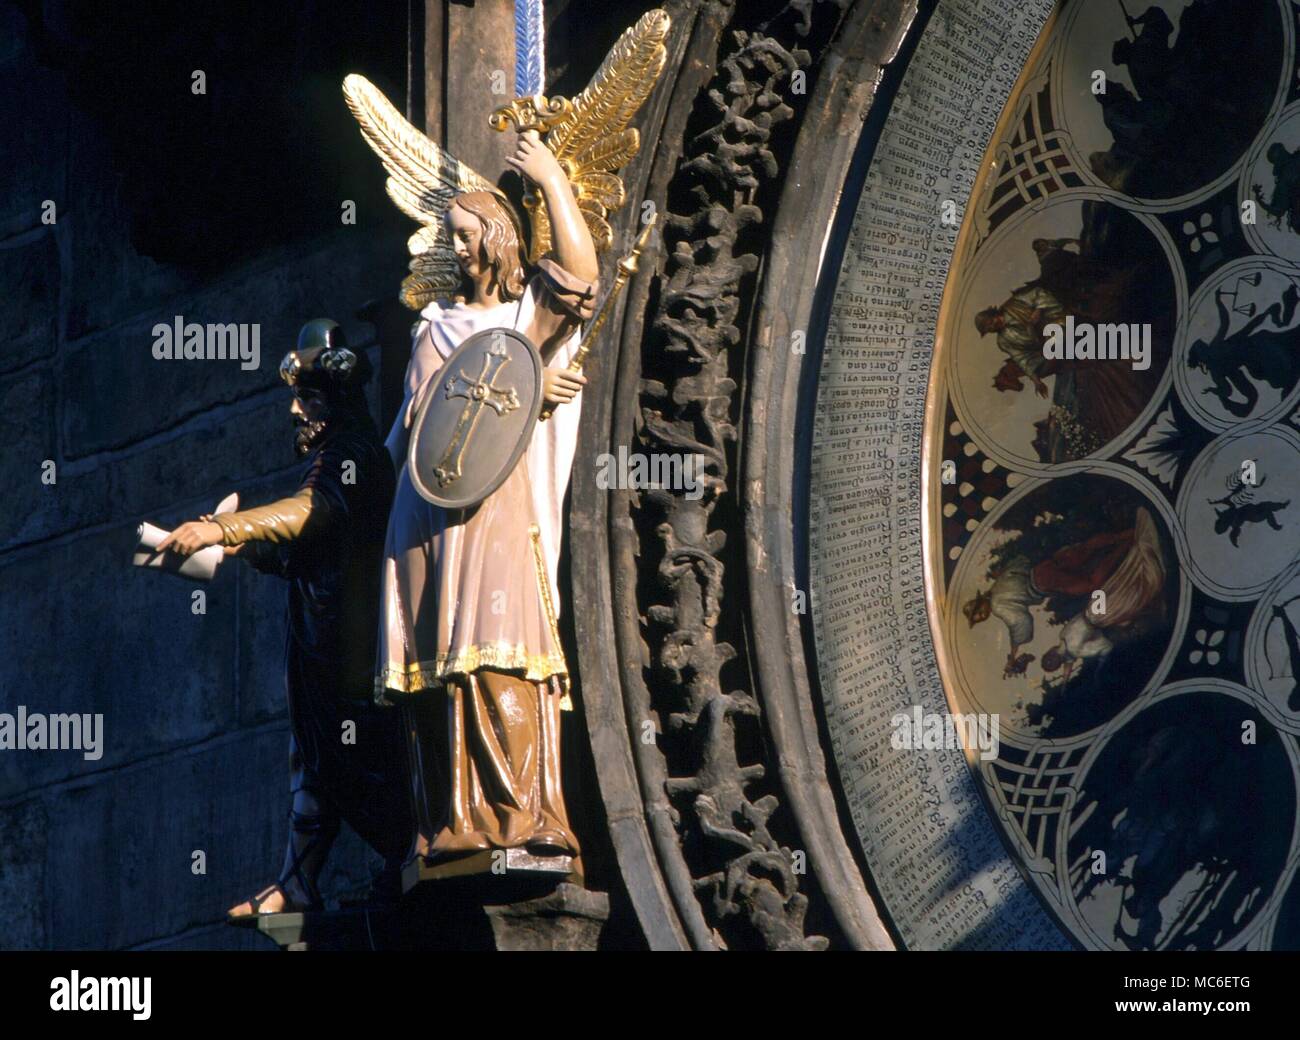 Engel - Erzengel Michael, als Zeiger der Prozession der Tage, auf die Astronomische Uhr im Alten Rathaus, Prag. ursprünglich aus dem 15. Jahrhundert Stockfoto